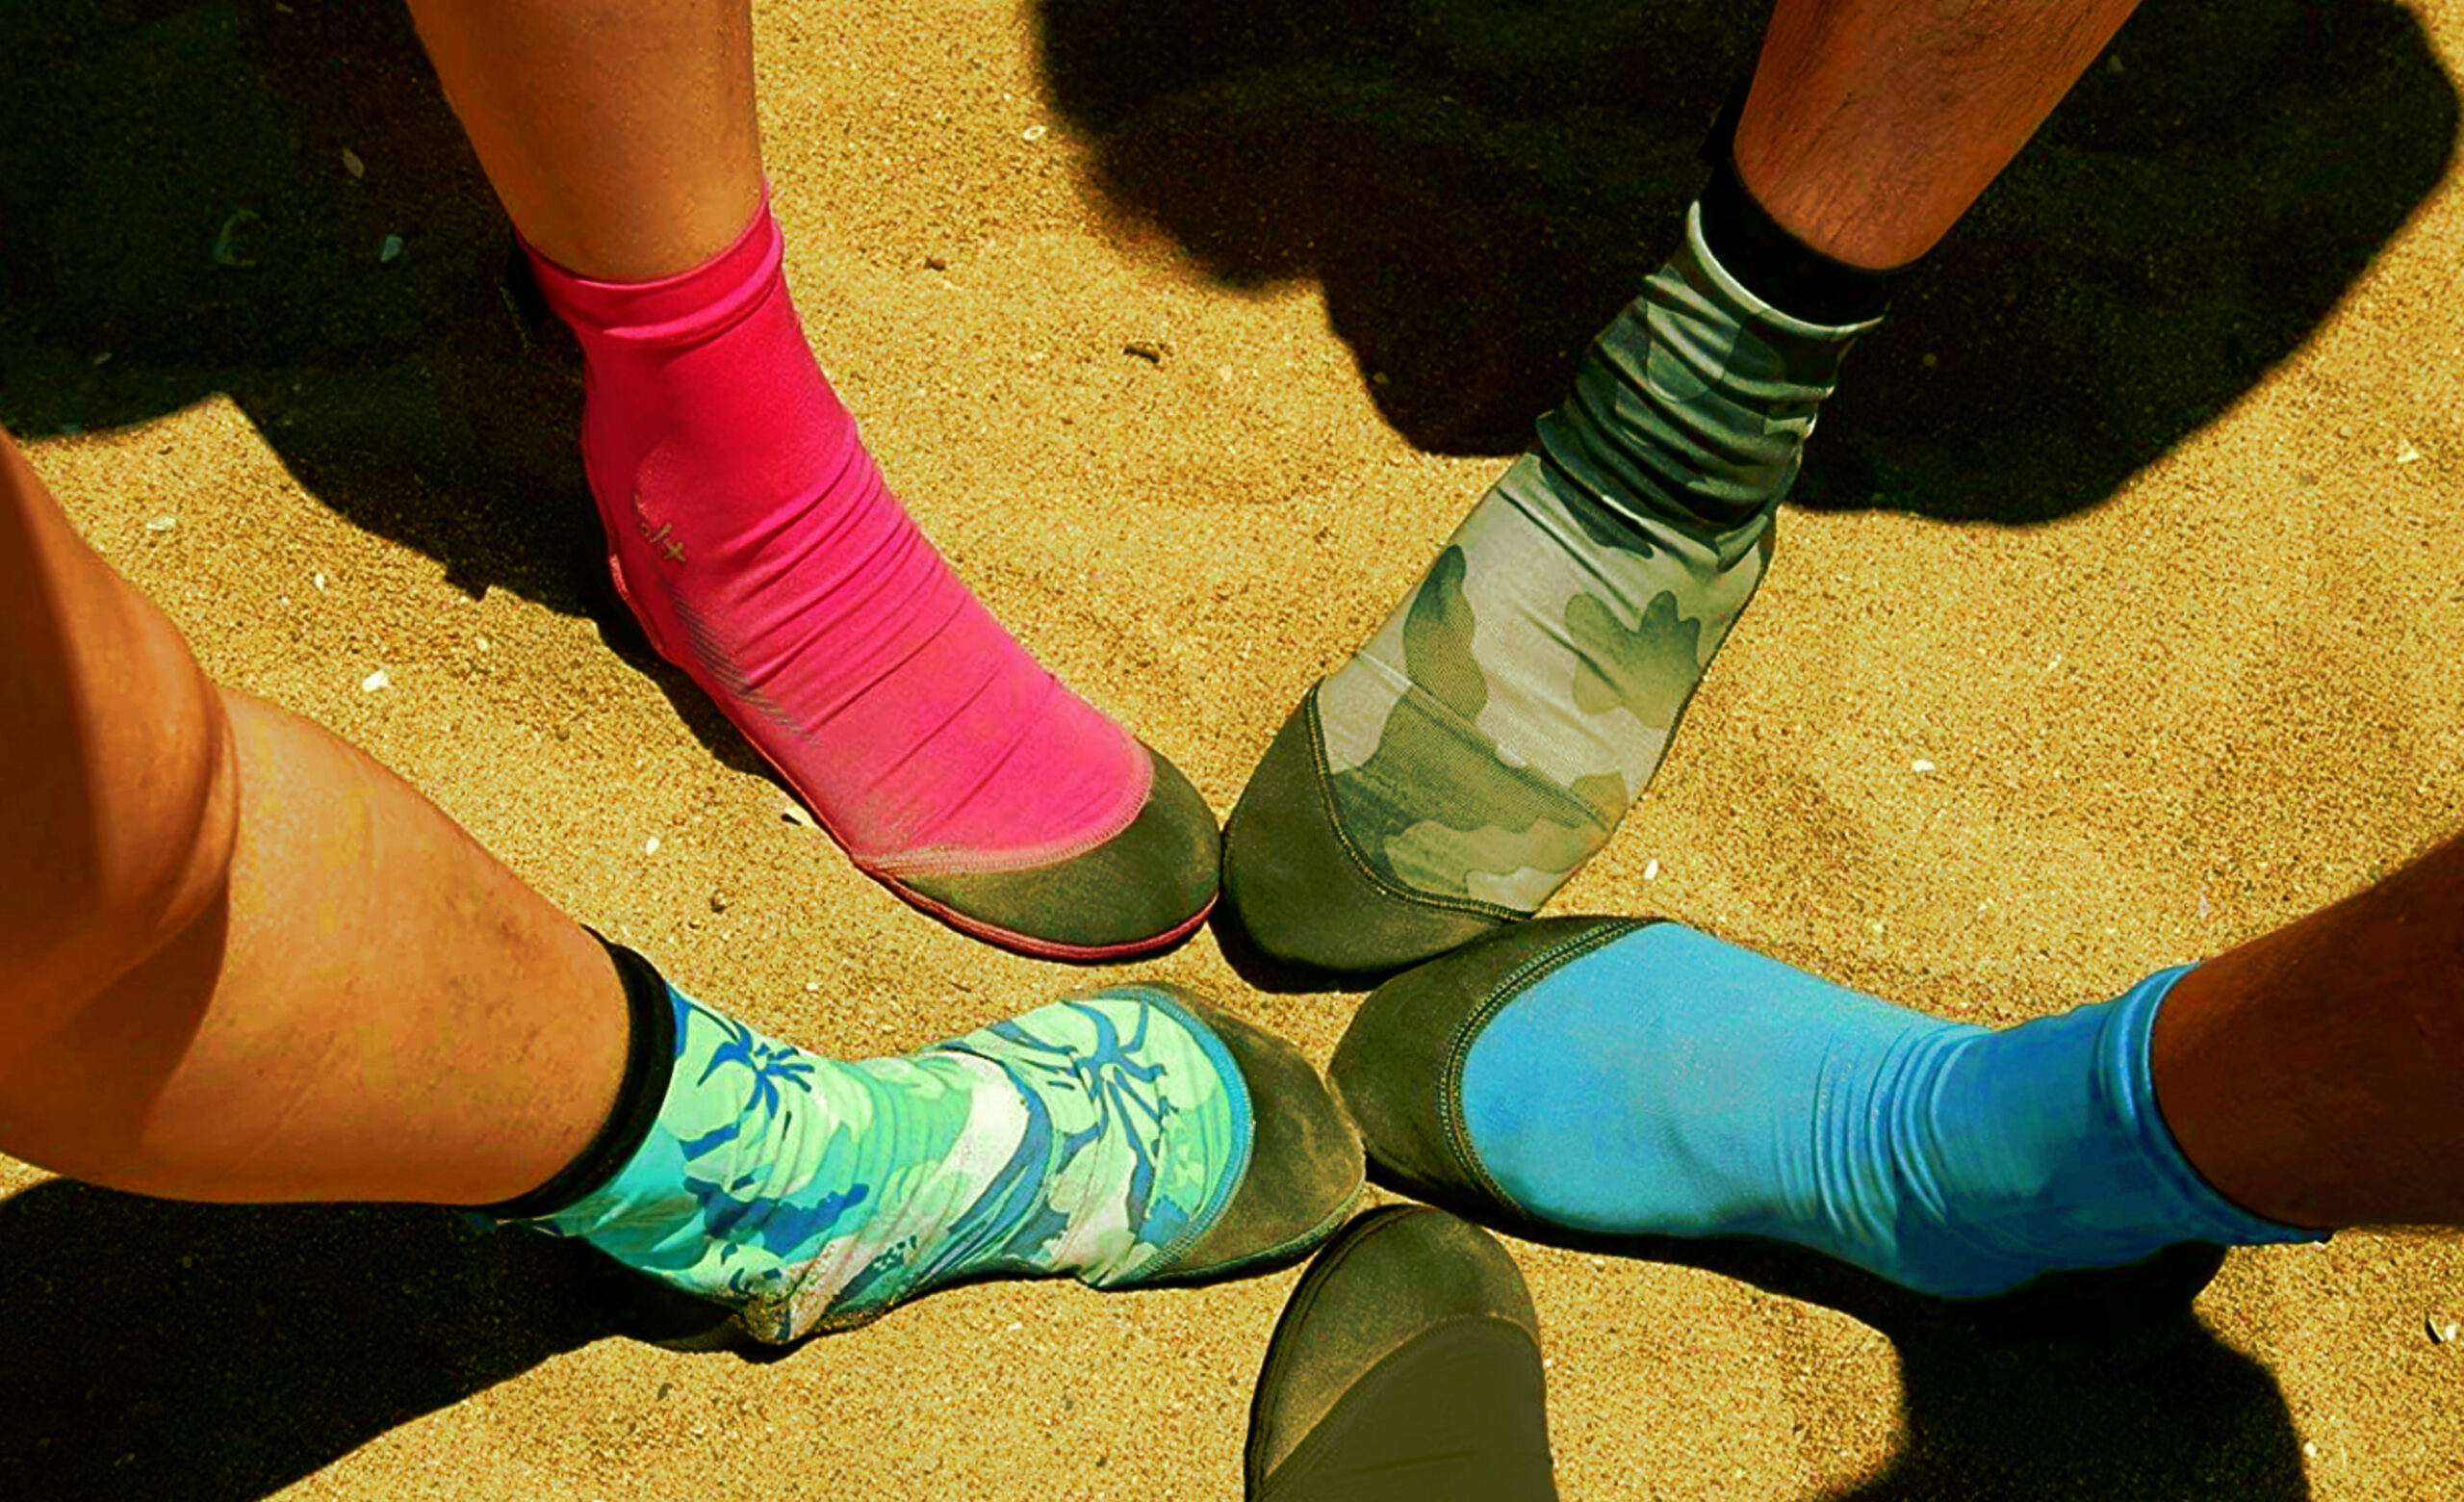 Calzini di sabbia - per il Beach Volley, Calcio, Navigare ecc.